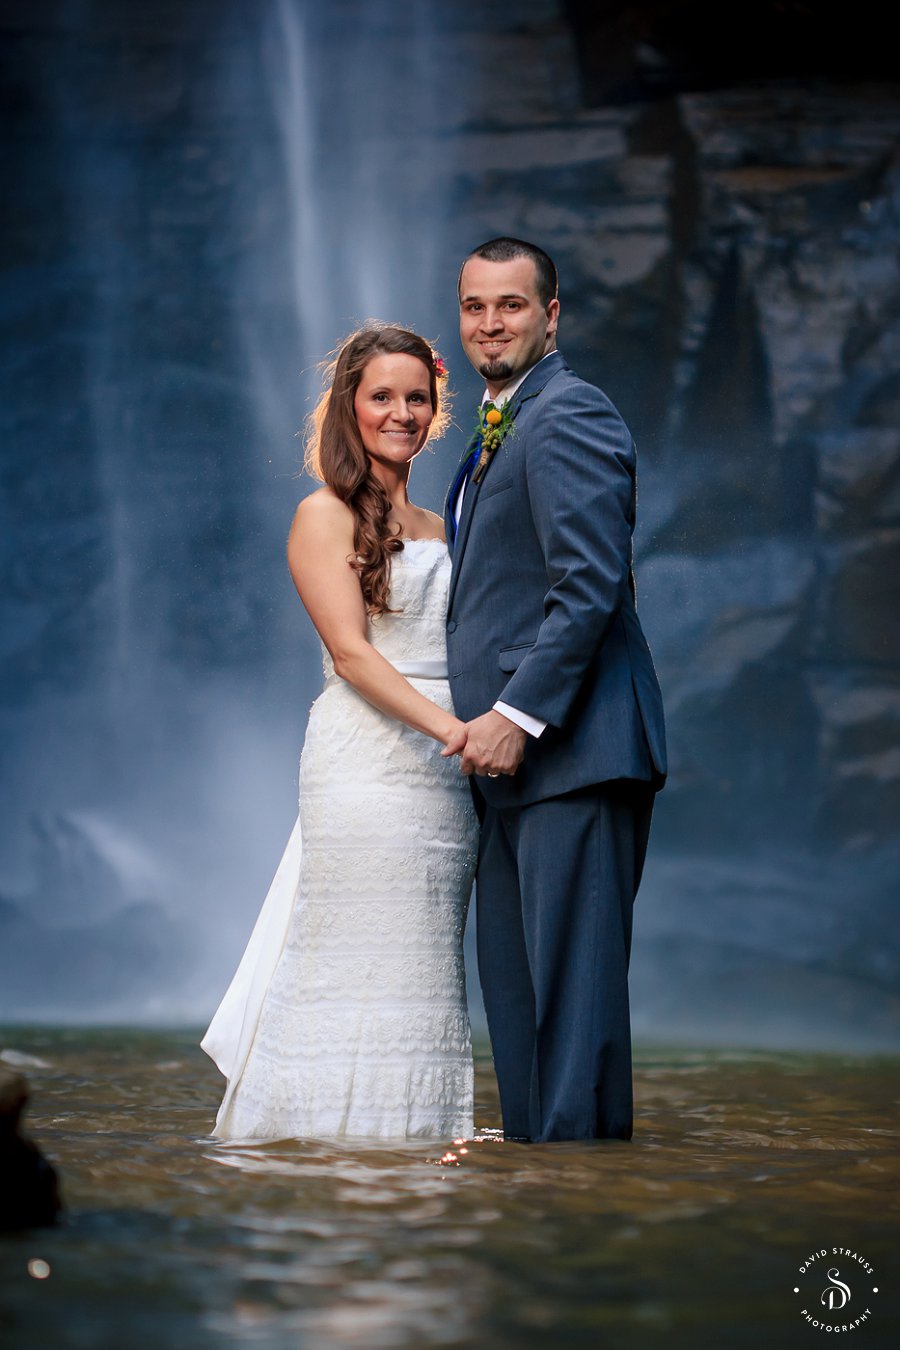 Toccoa Falls Wedding - GA Photographer - Jonathan and Lacy -17